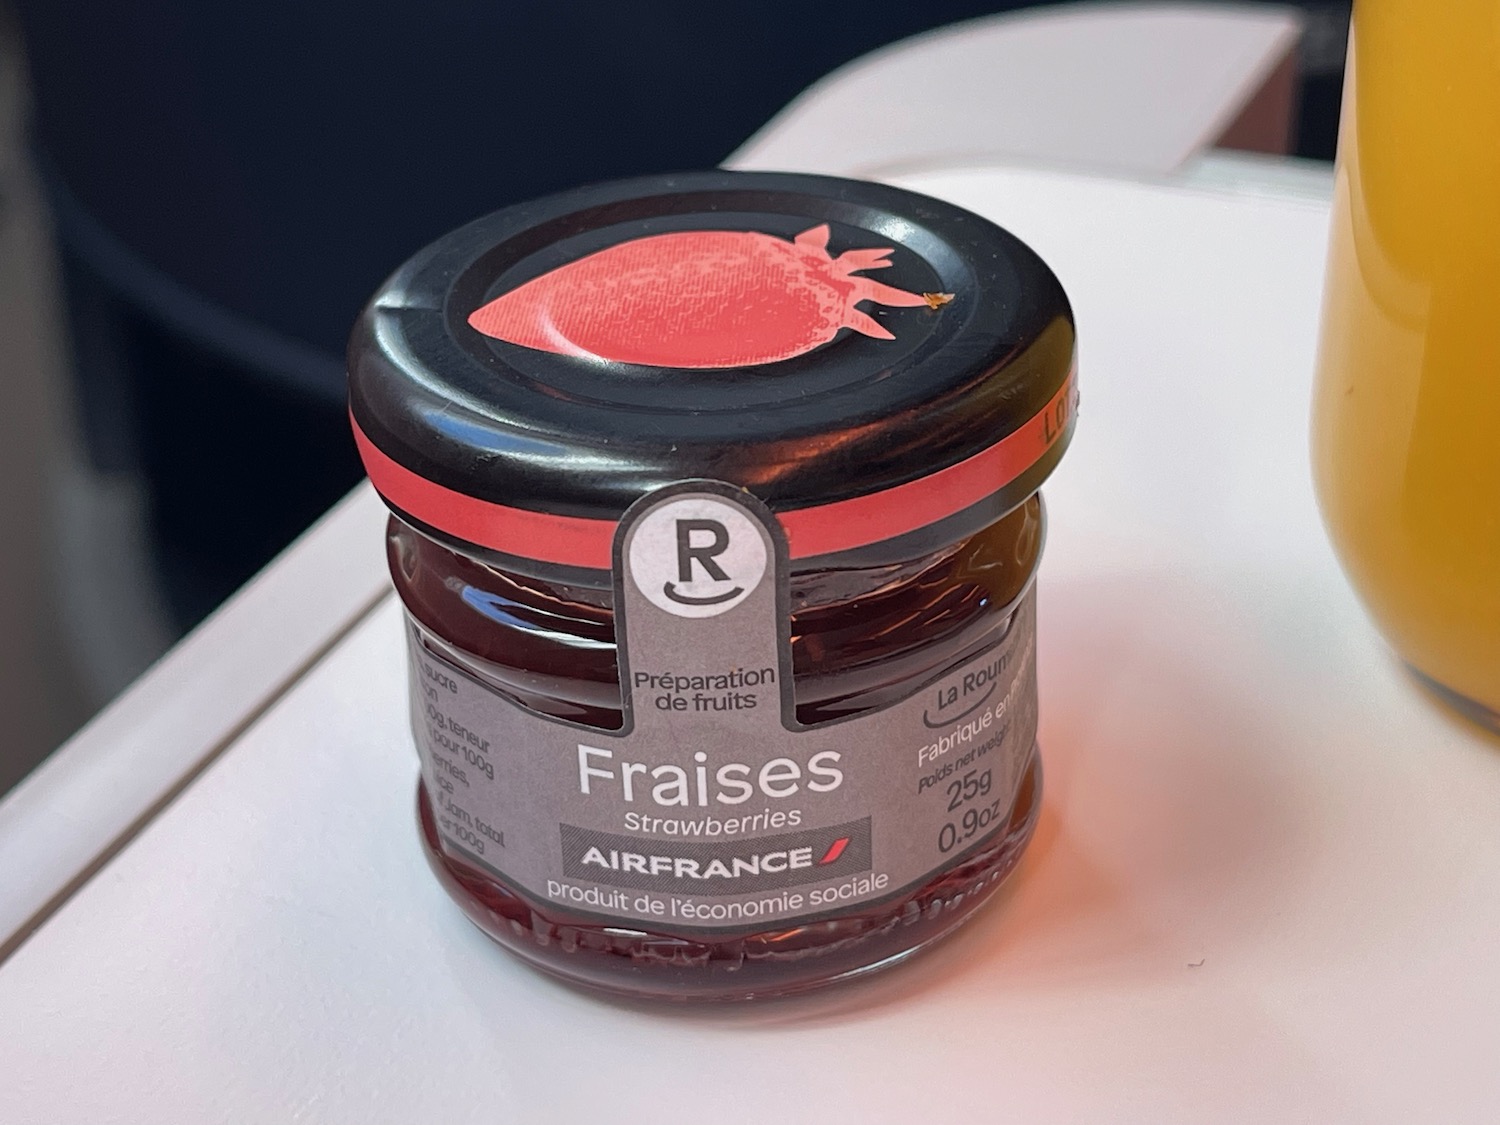 a jar of jam on a table